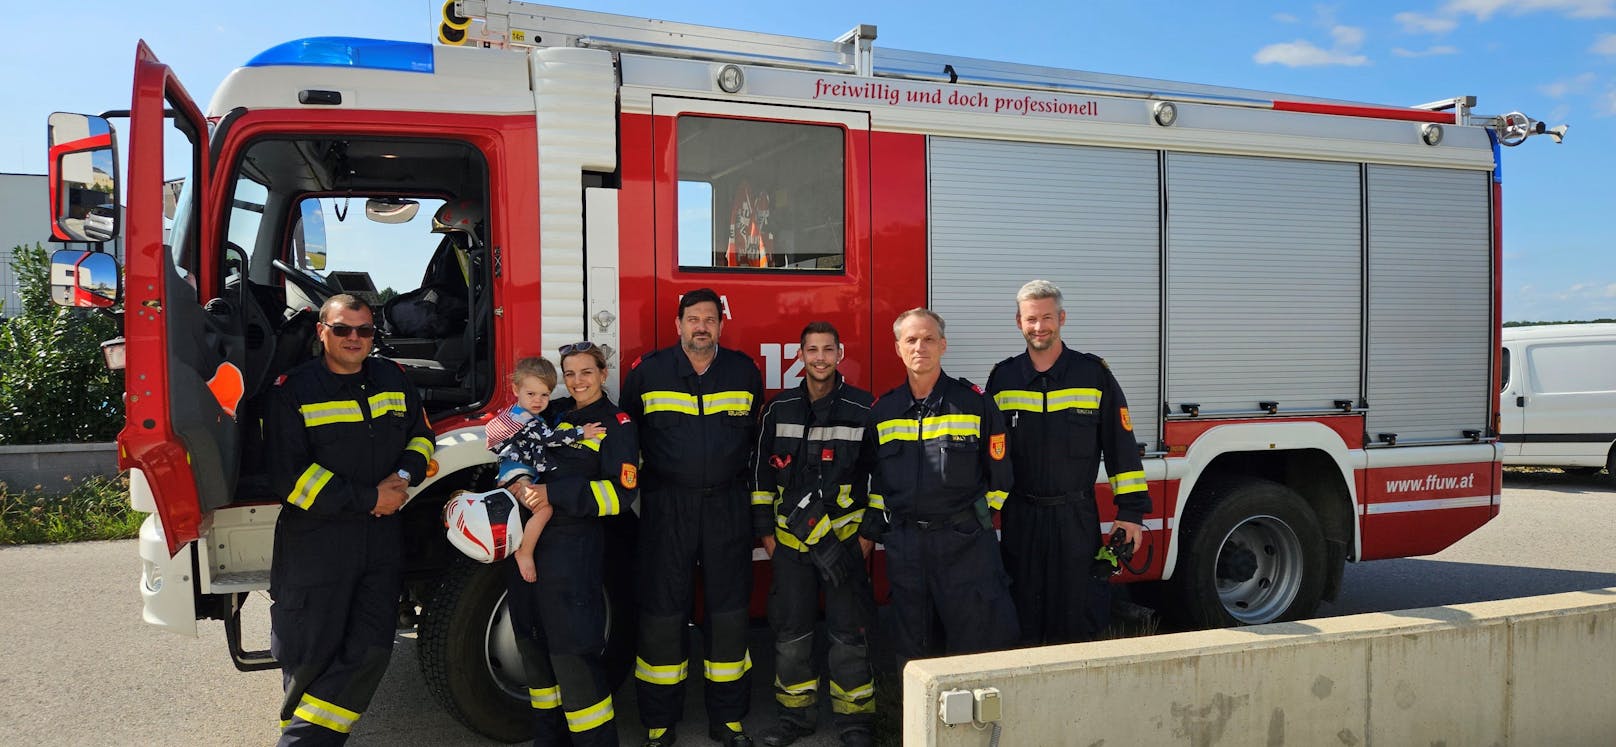 Constantin sperrte Mama aus Haus aus – Feuerwehr half